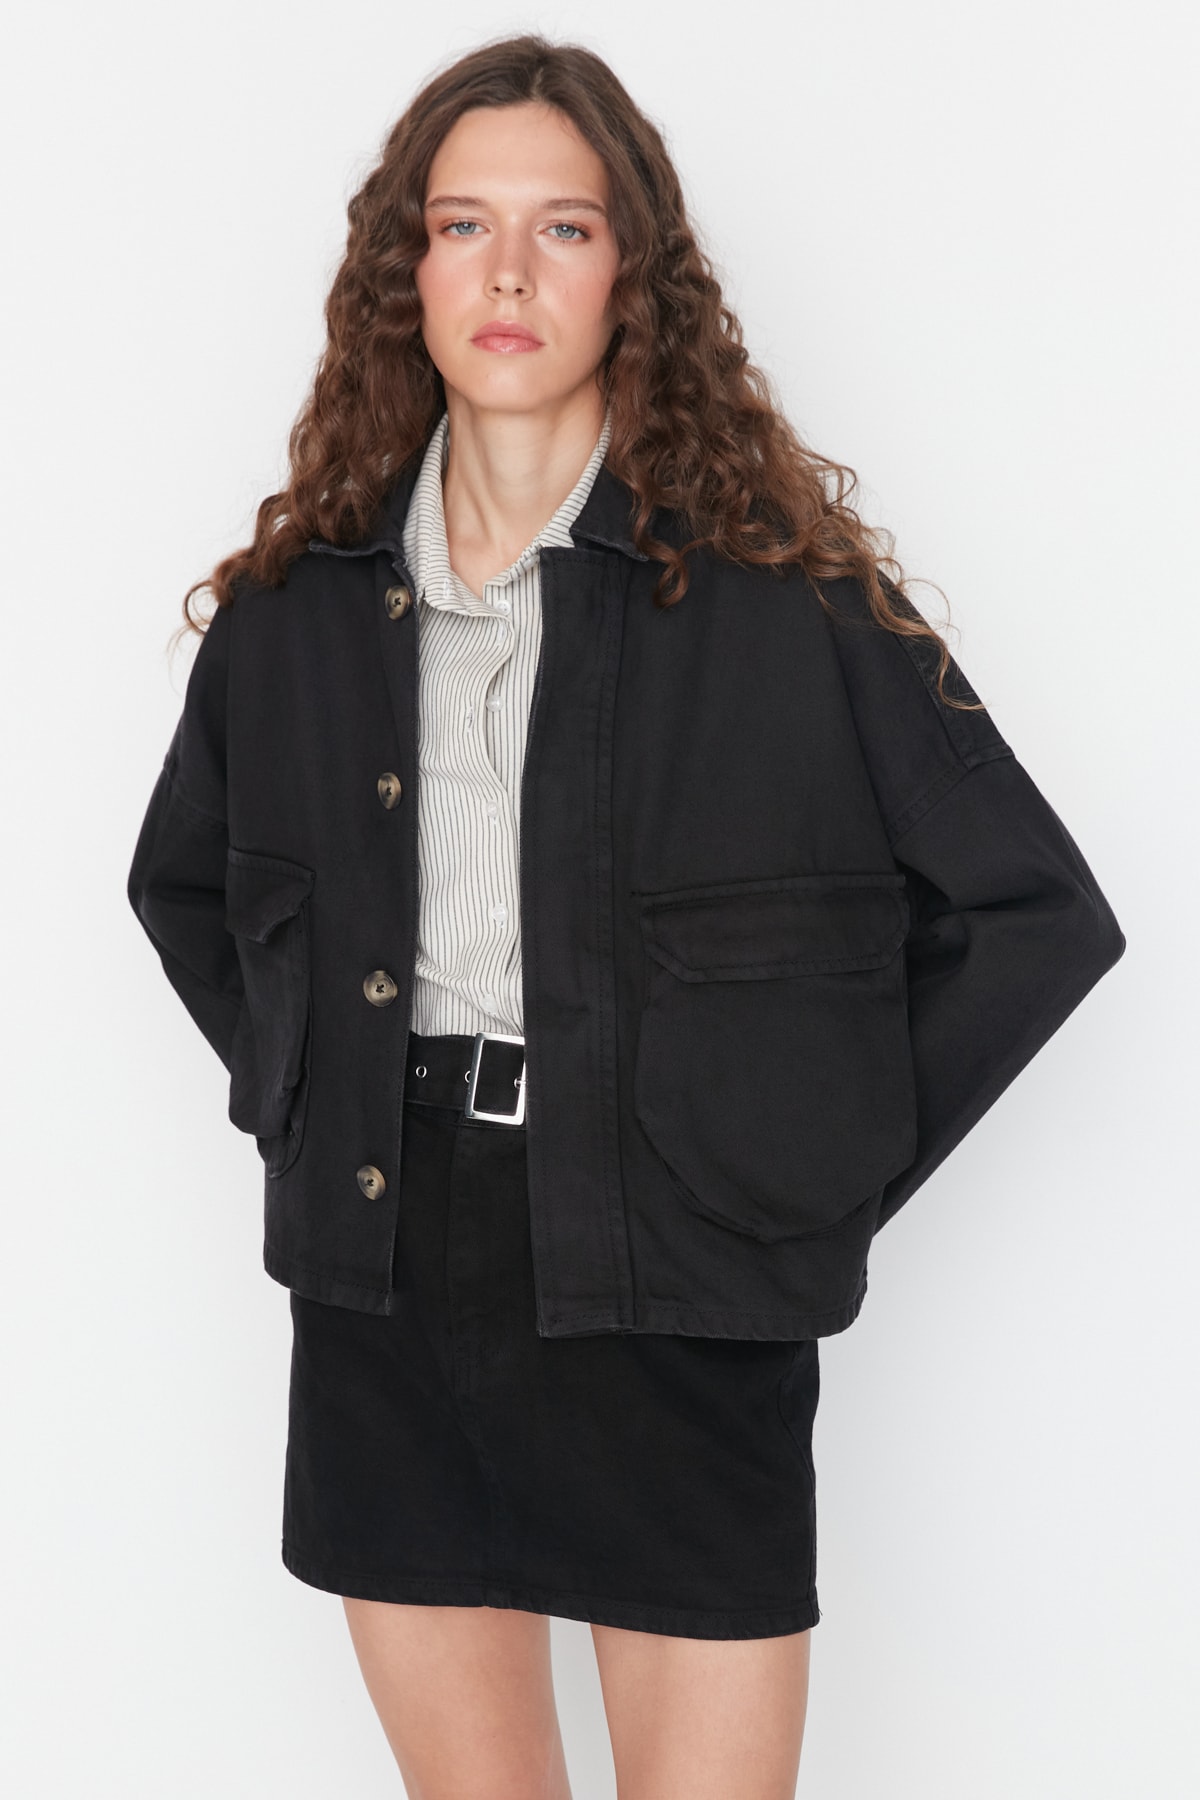 Trendyol Black Pocket Detailed Oversize Denim Jacket